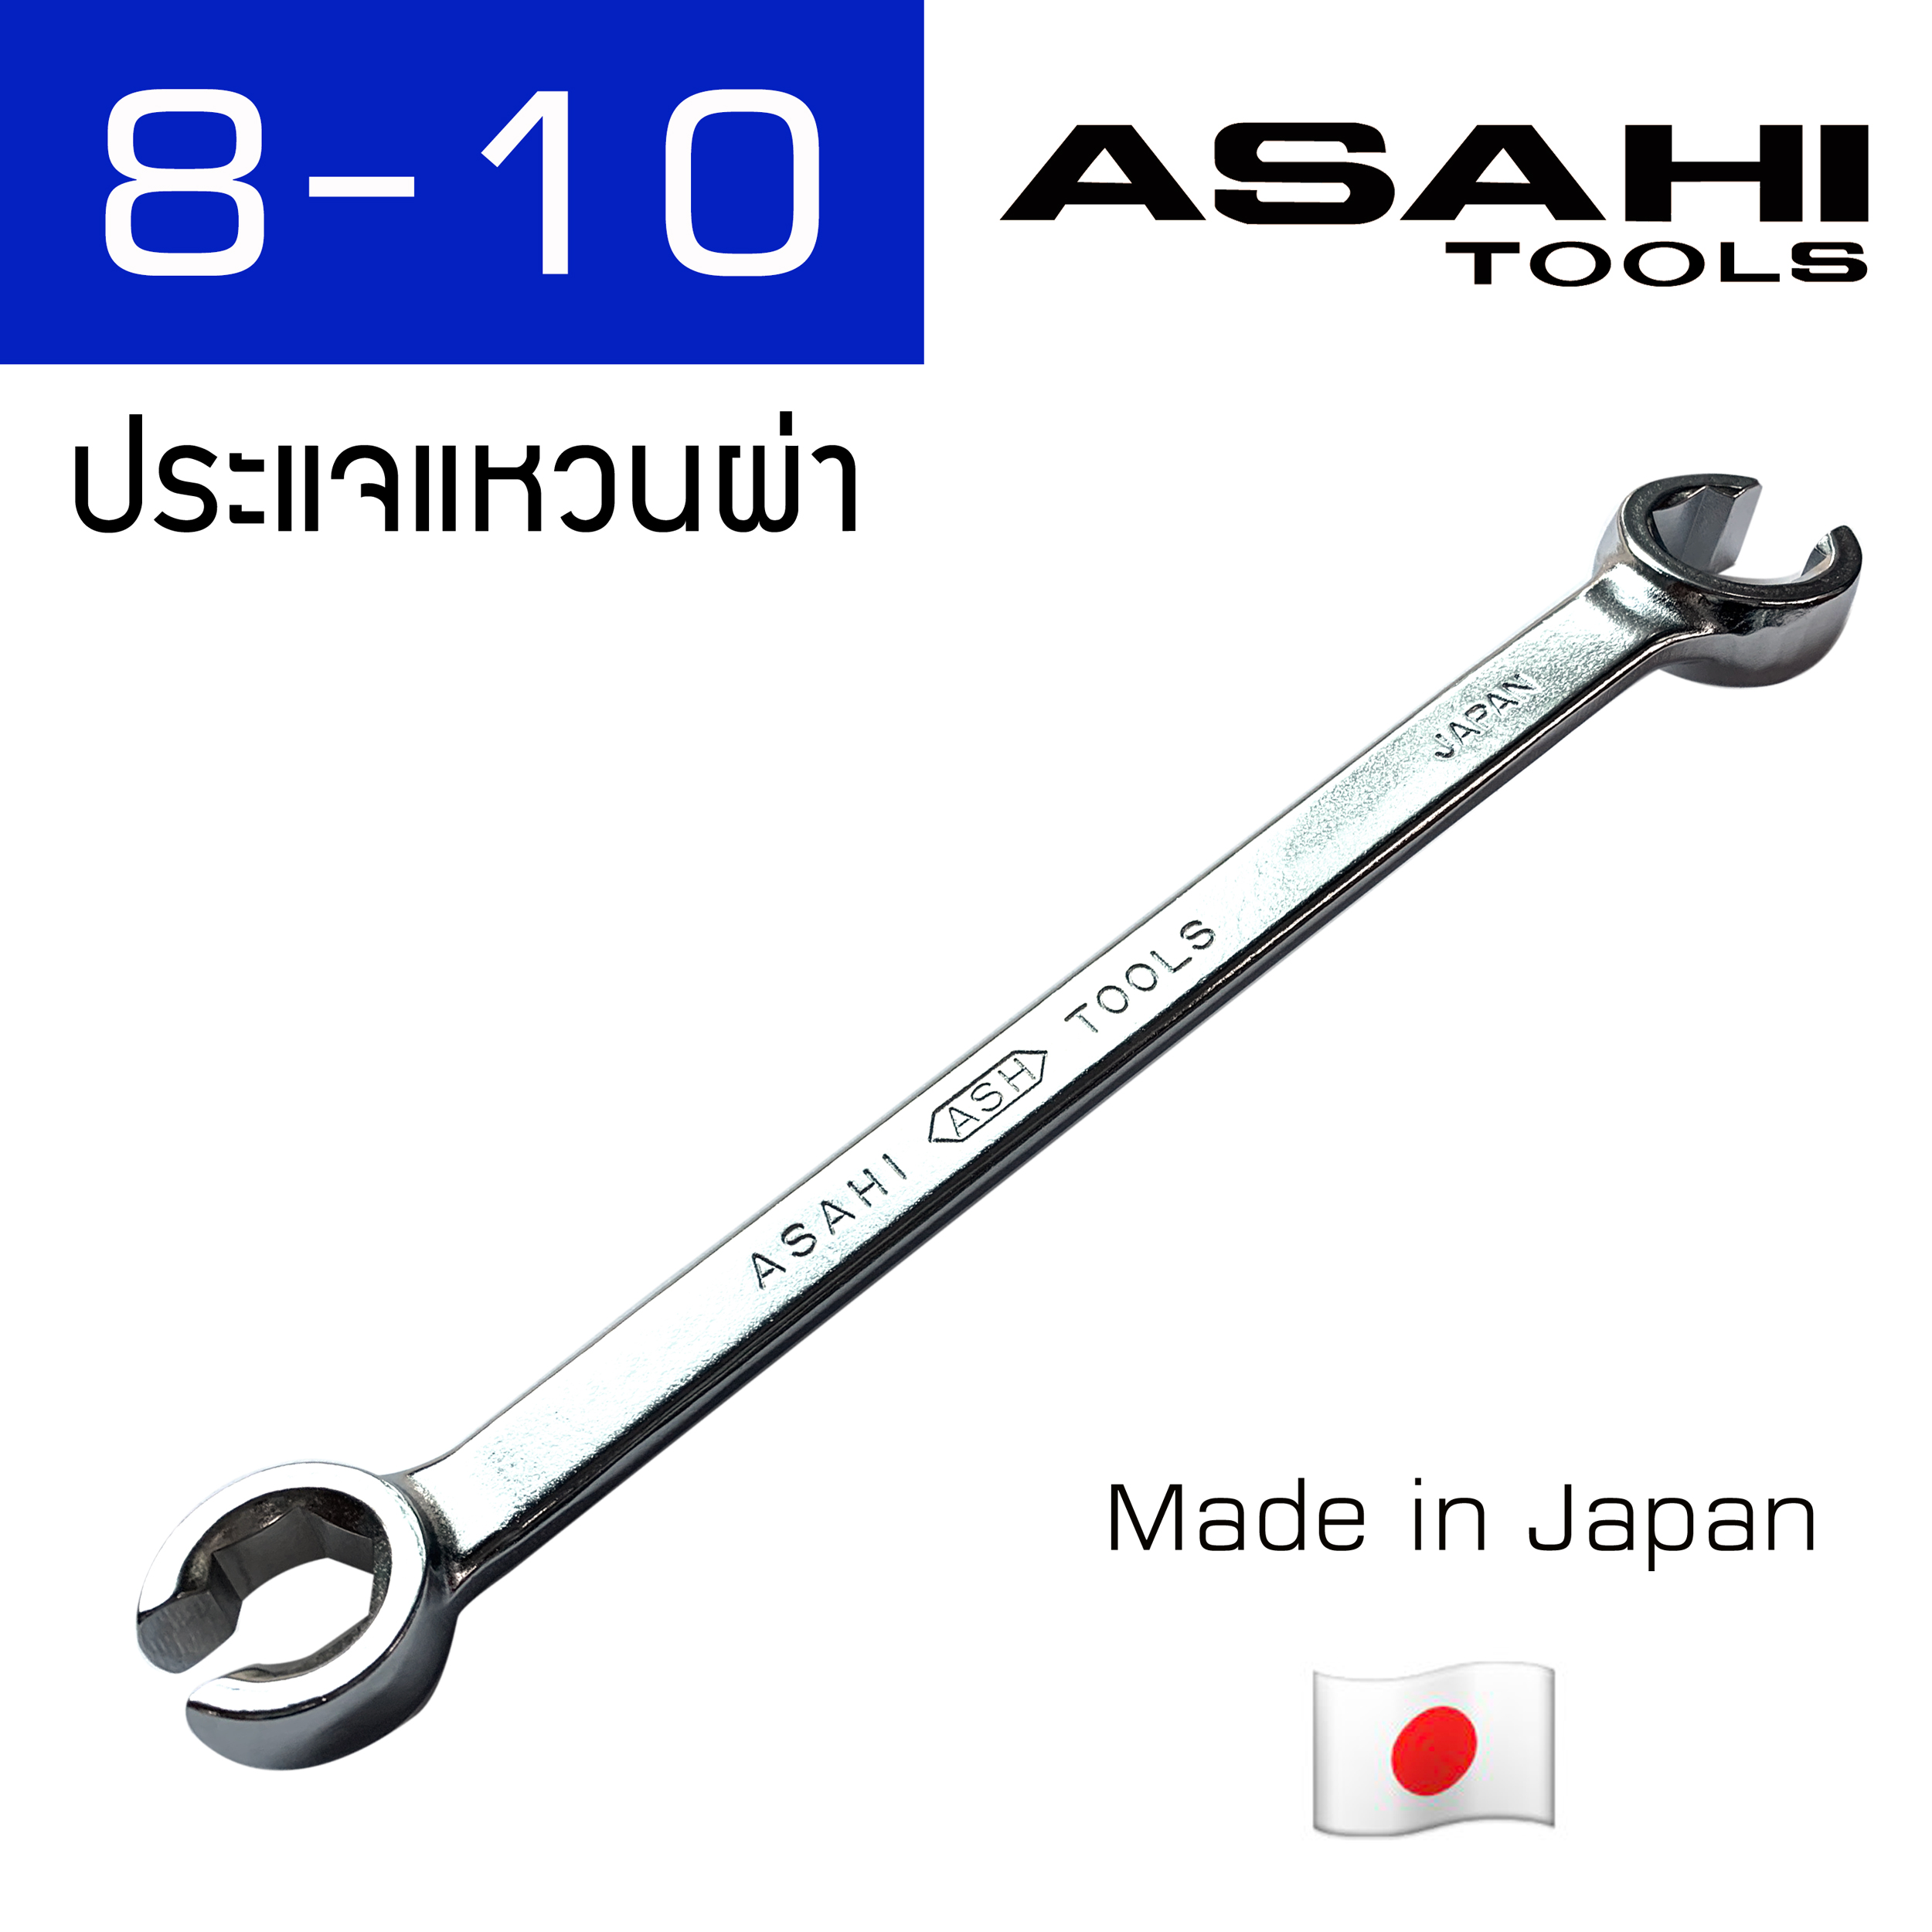 Asahi ประแจแหวนผ่า (6 ขนาดเลือกได้ตอนสั่งซื้อ) Made in Japan